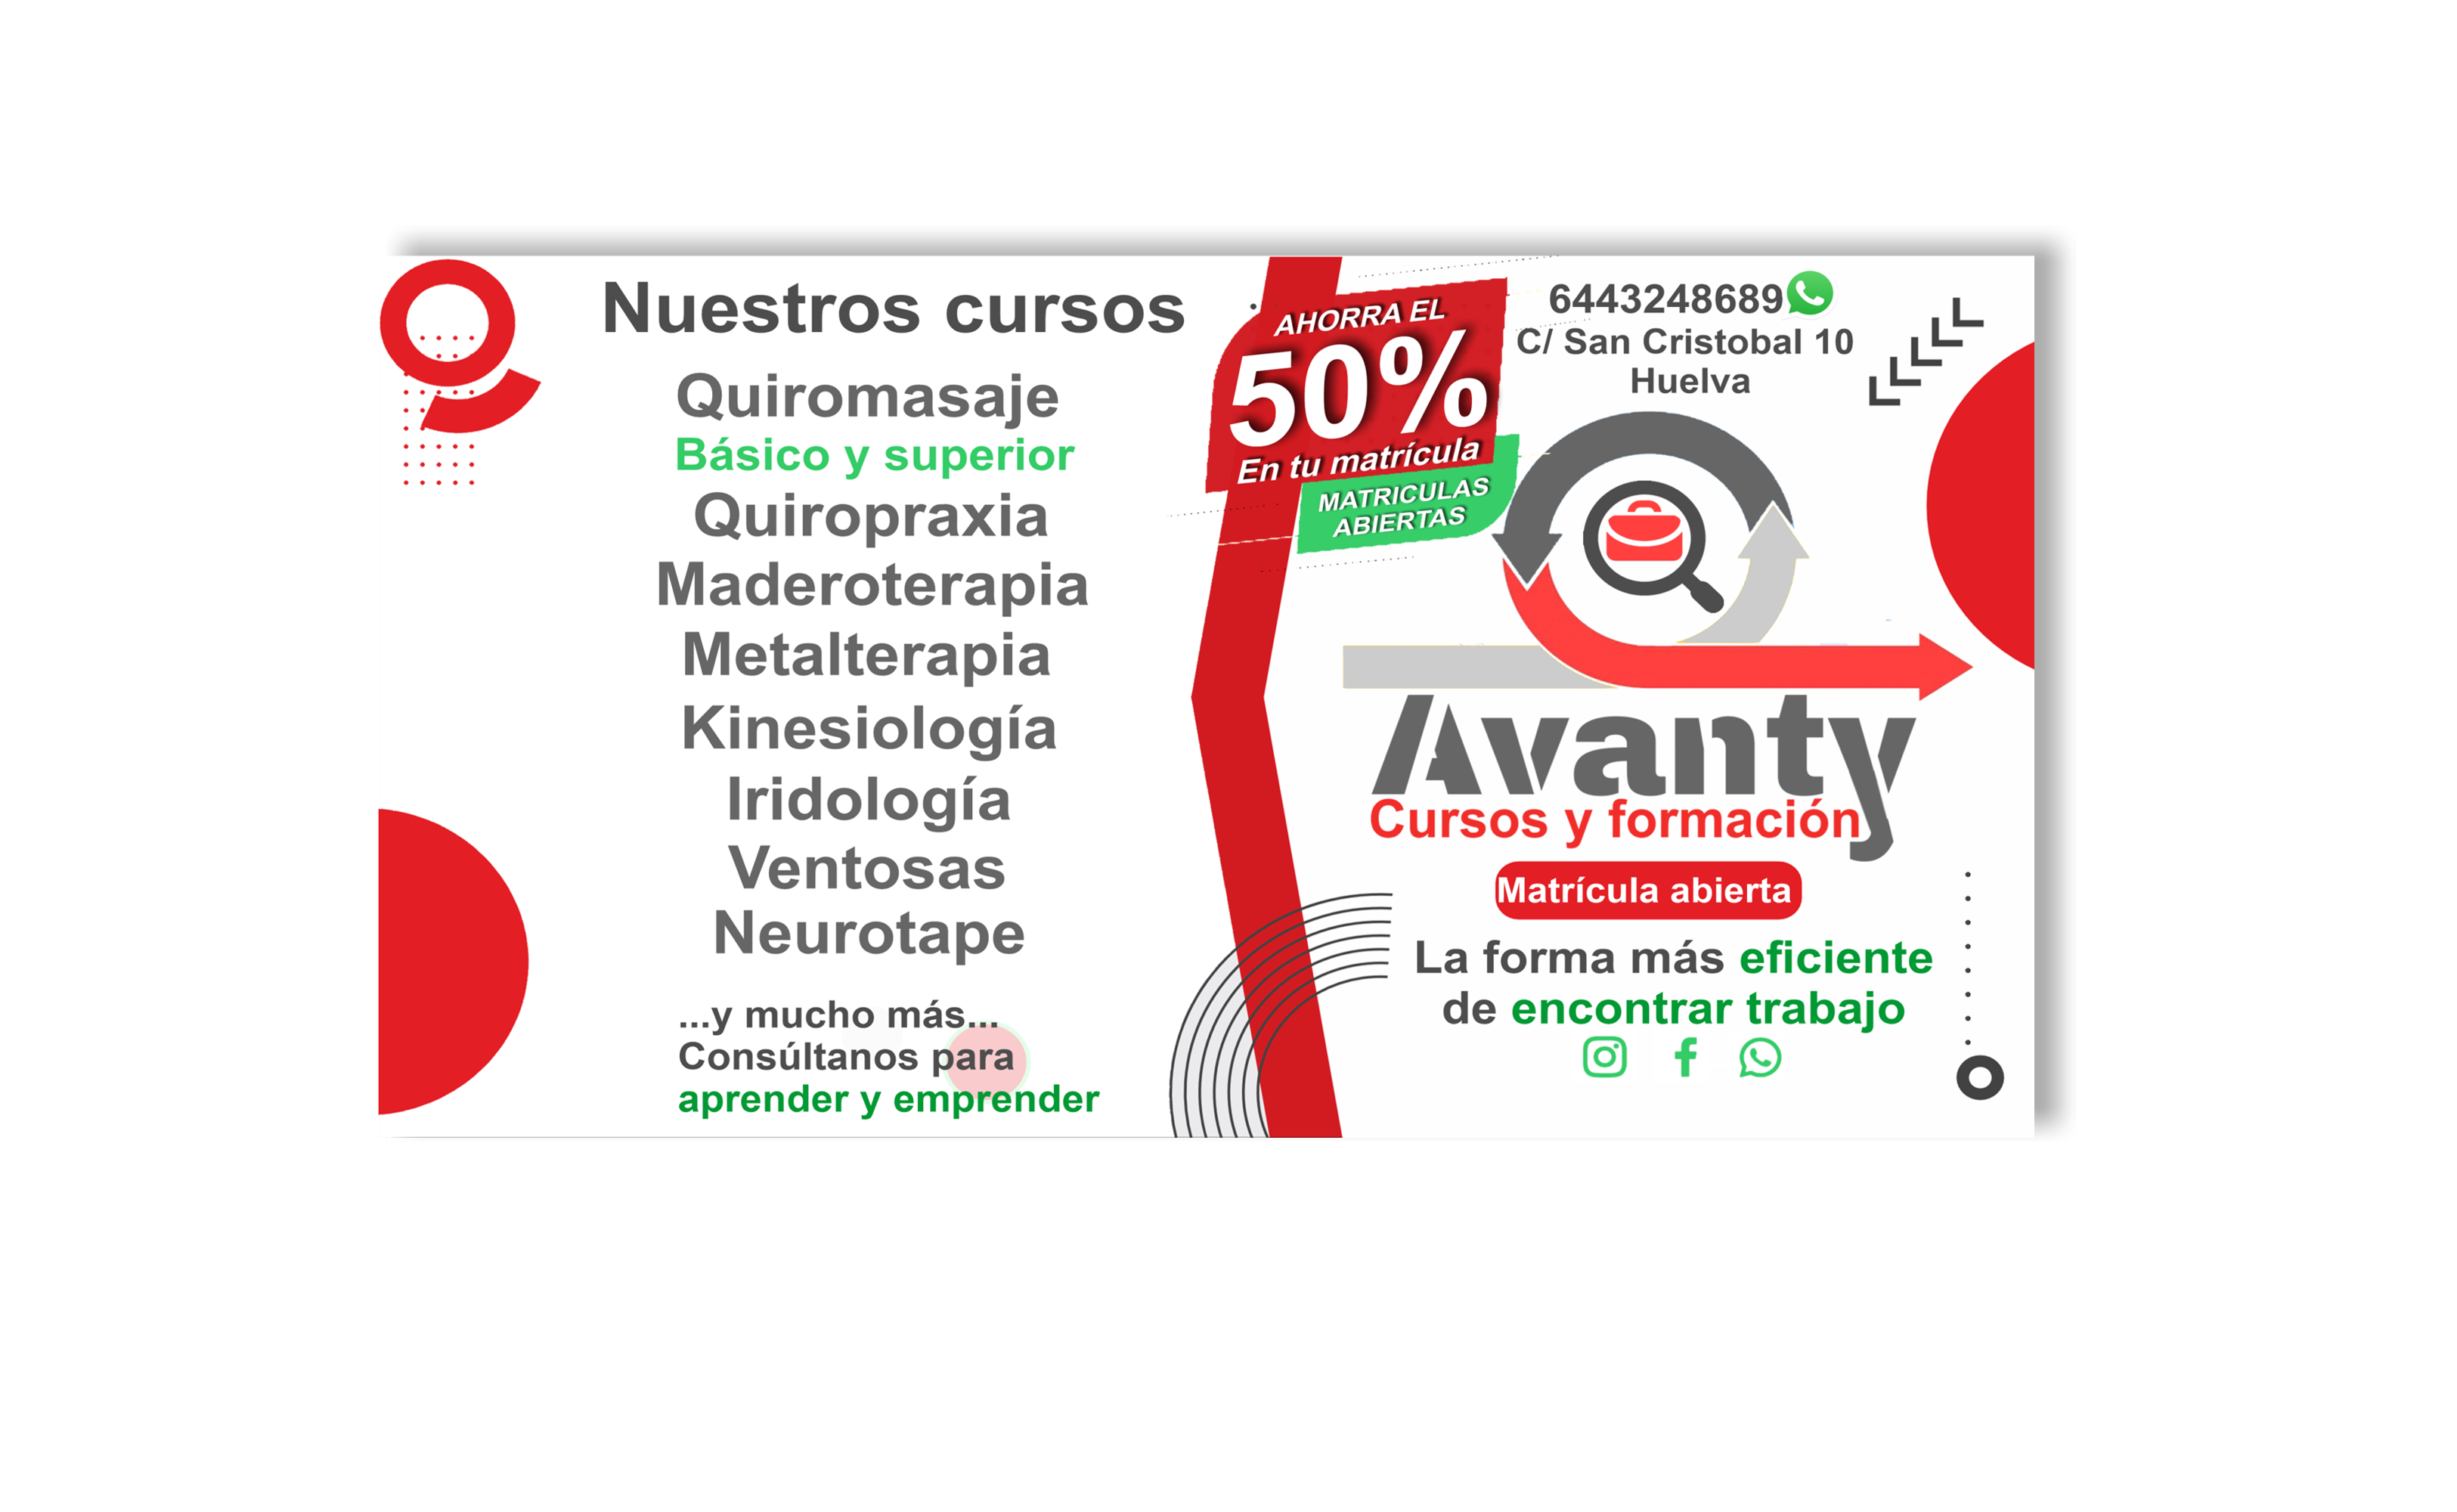 Cursos de quiromasaje en Huelva Curso de quiropraxia en Huelva Curso de maderoterapia en huelva curso de kinesiologia en huelva curso de iridologia en huelva 